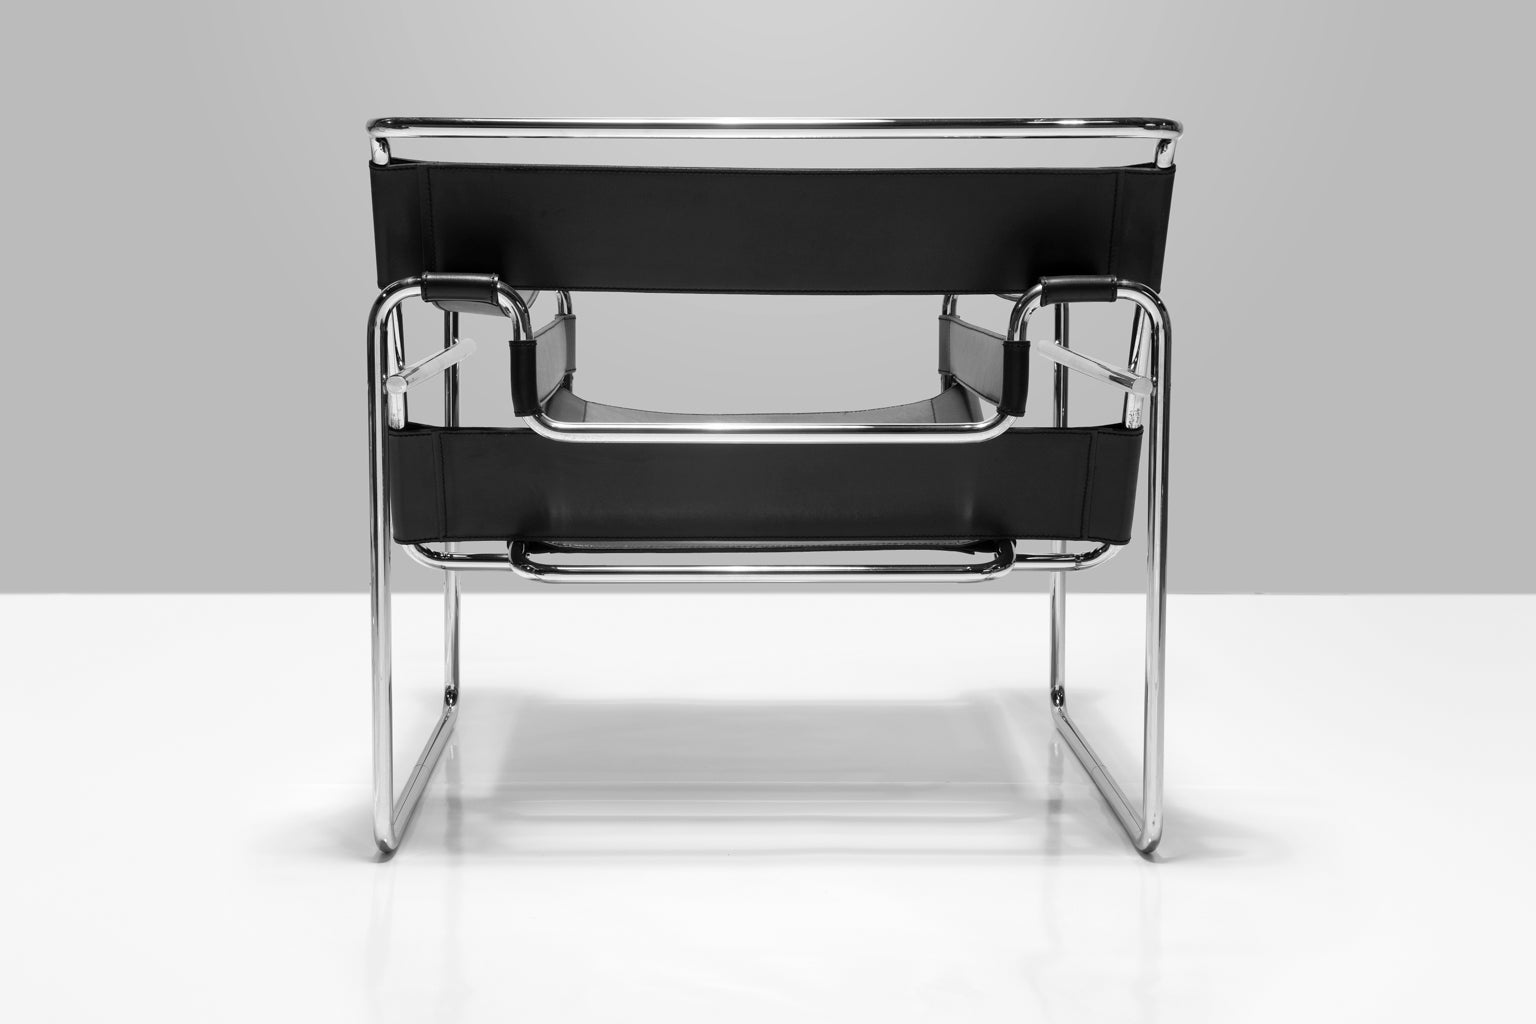 Wassily Club Chair von Marcel Breuer, entworfen 1925 - 26 für Knoll, auch bekannt als Modell B3 Stuhl. Breuer entwarf diesen Stuhl während seiner Zeit als Leiter der Tischlerwerkstatt am Bauhaus in Dessau, Deutschland. Diese Stühle sind in